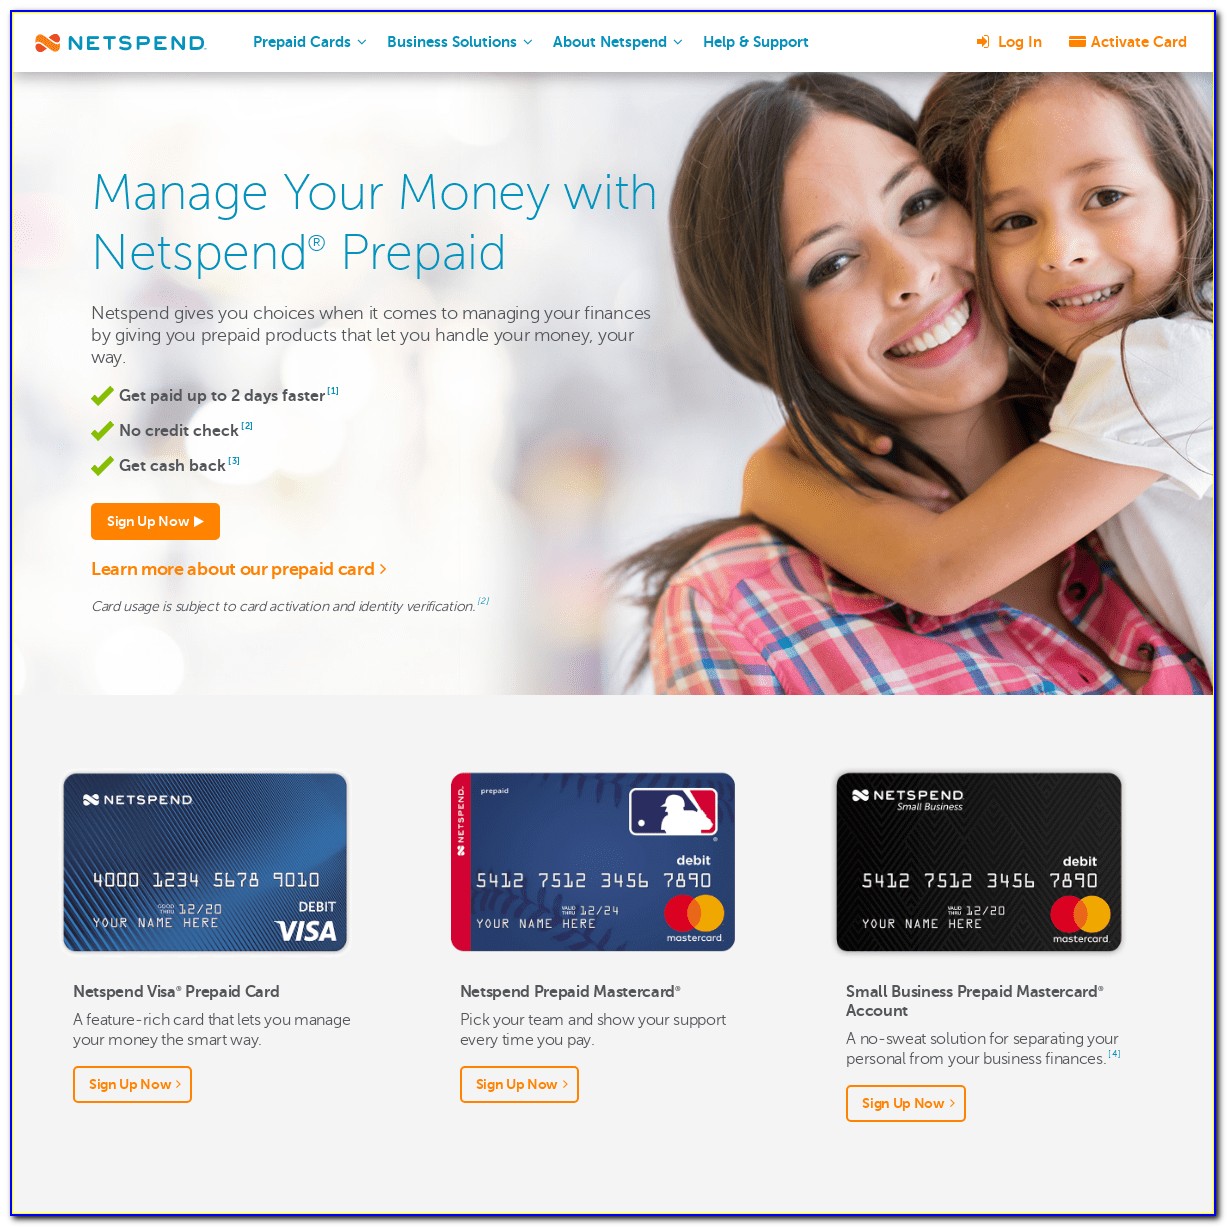 Netspend Small Business Card Login